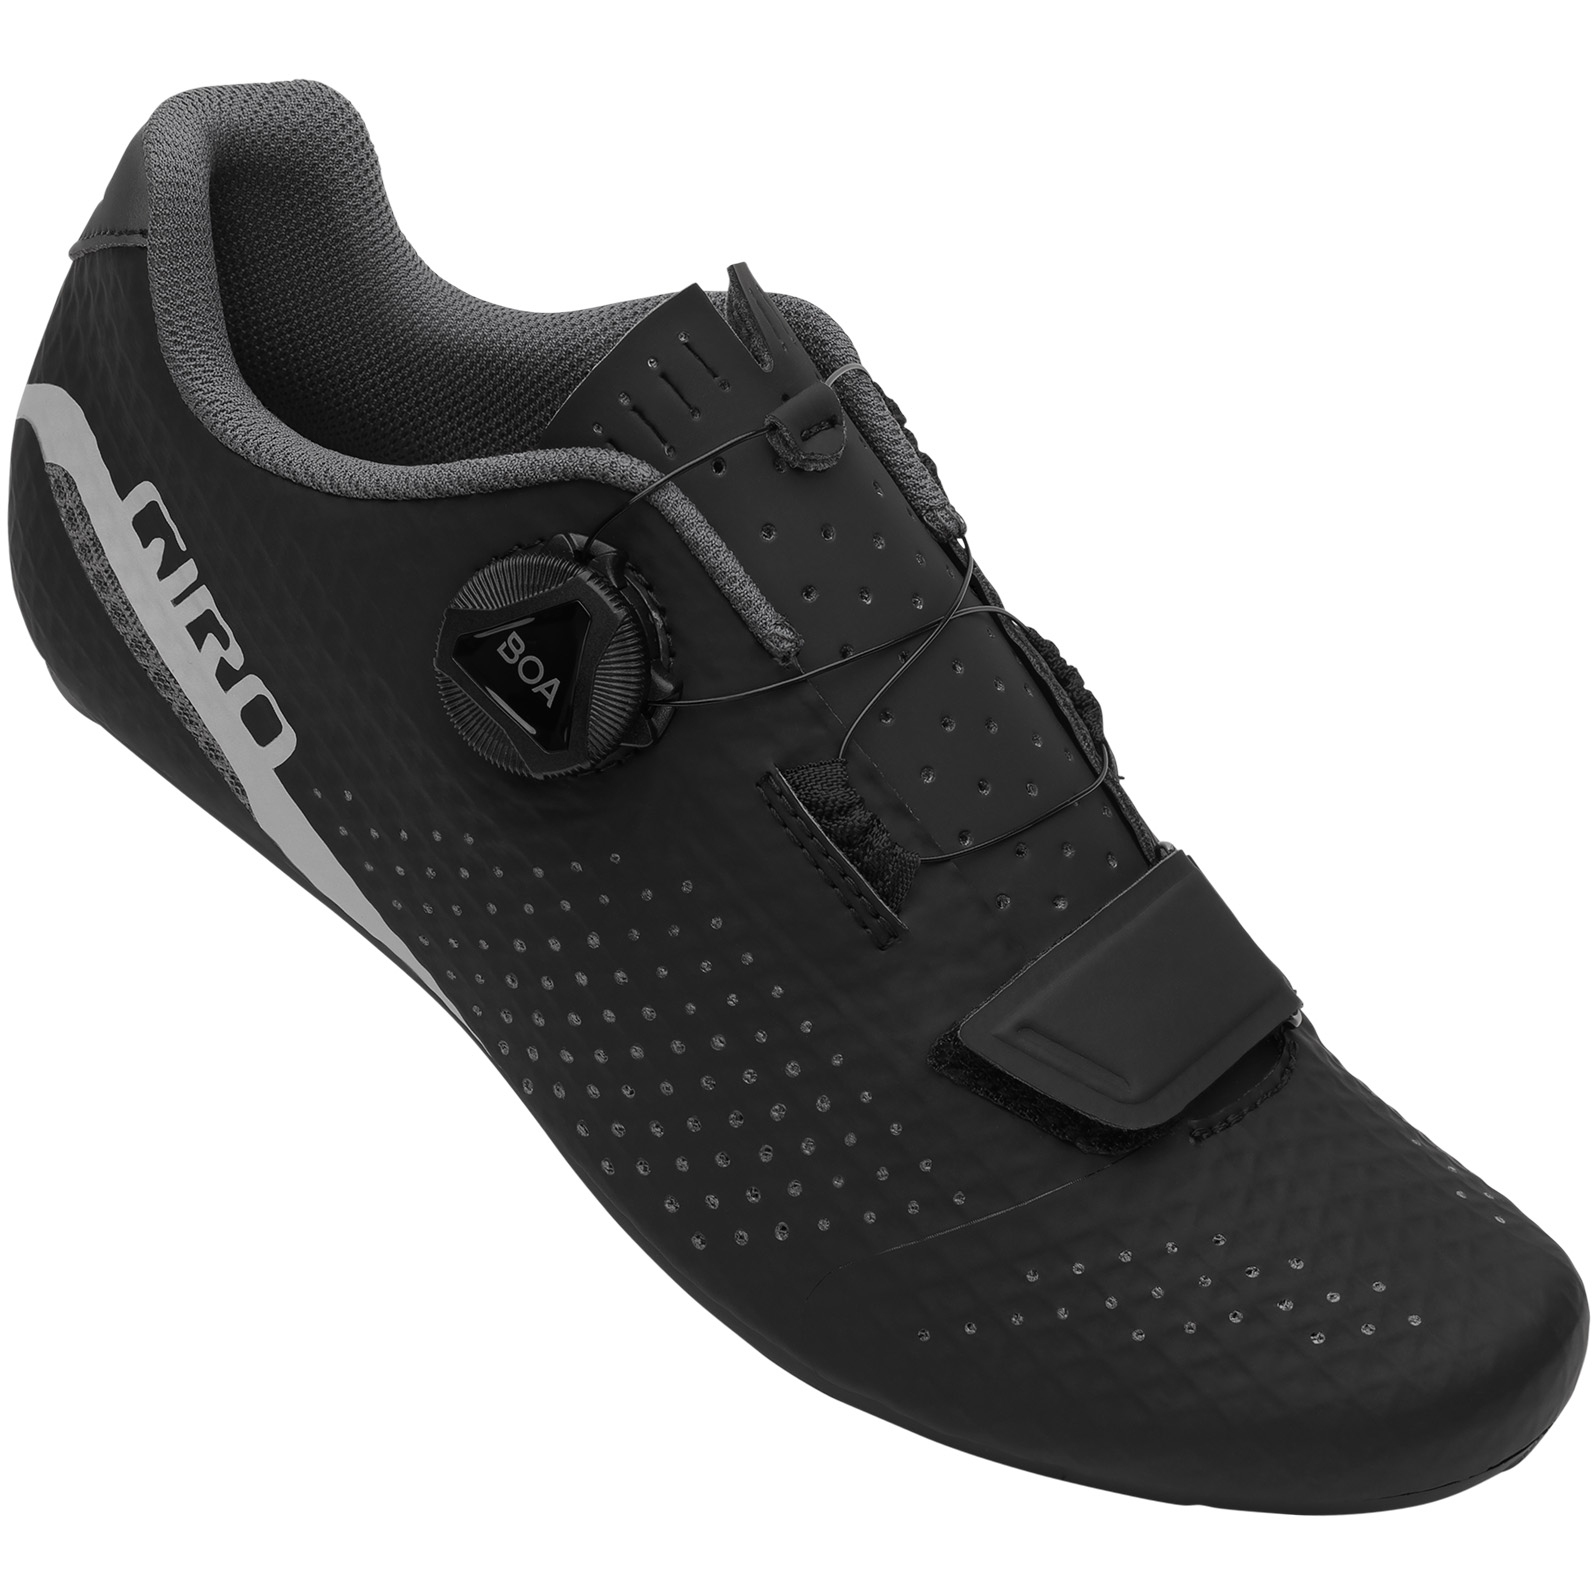 Produktbild von Giro Cadet Rennradschuhe Damen - schwarz